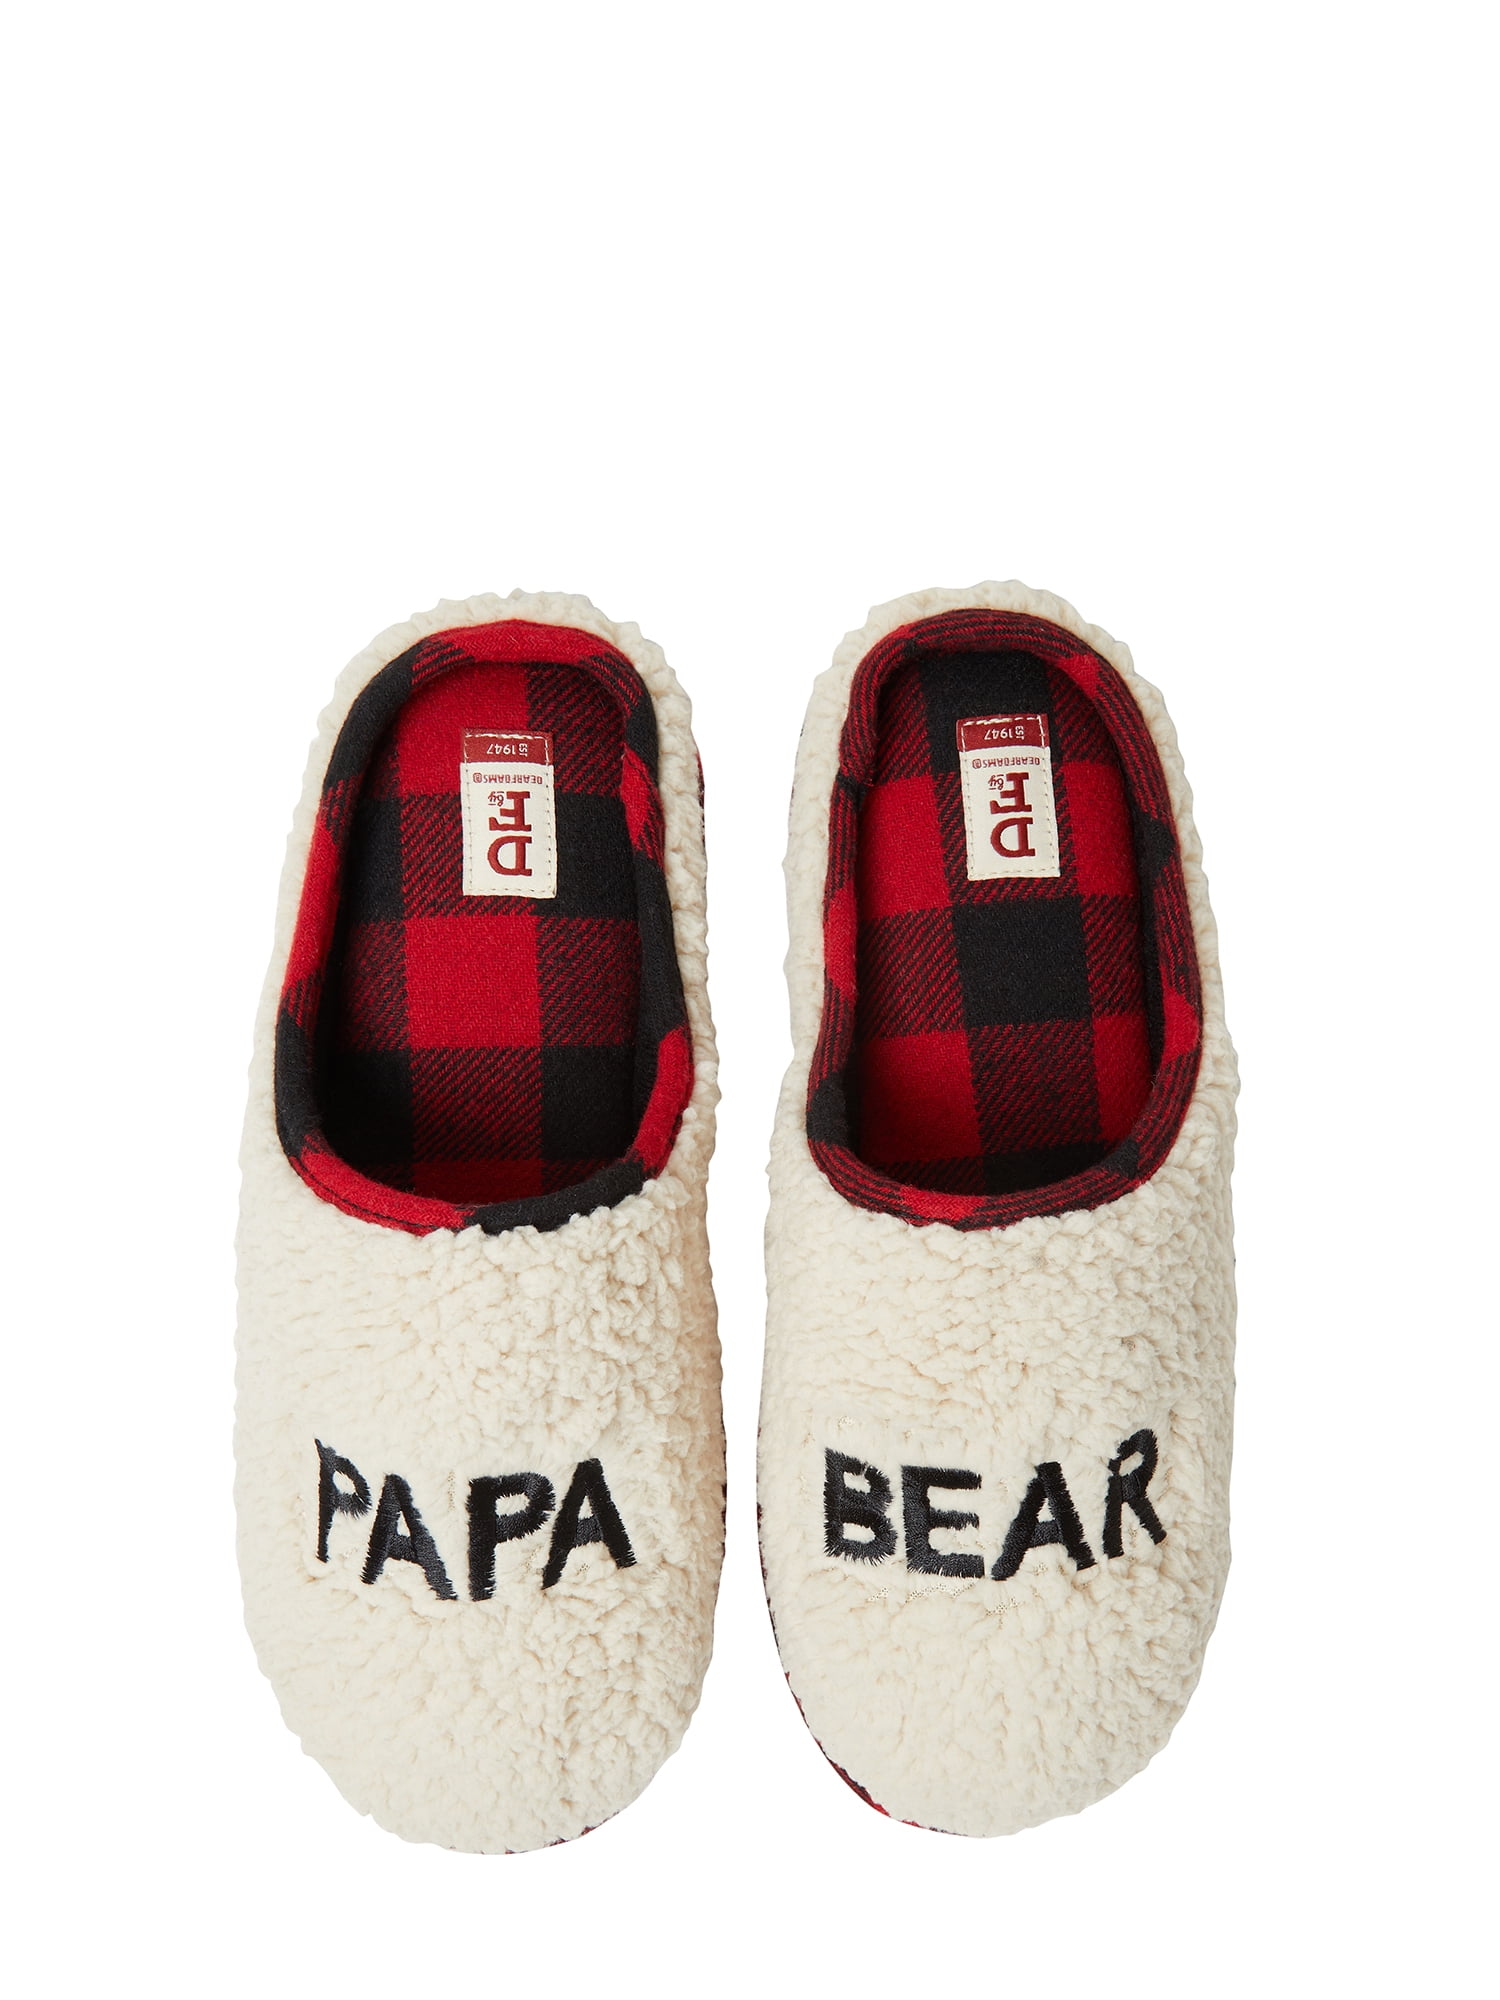 dearfoam family bear slippers